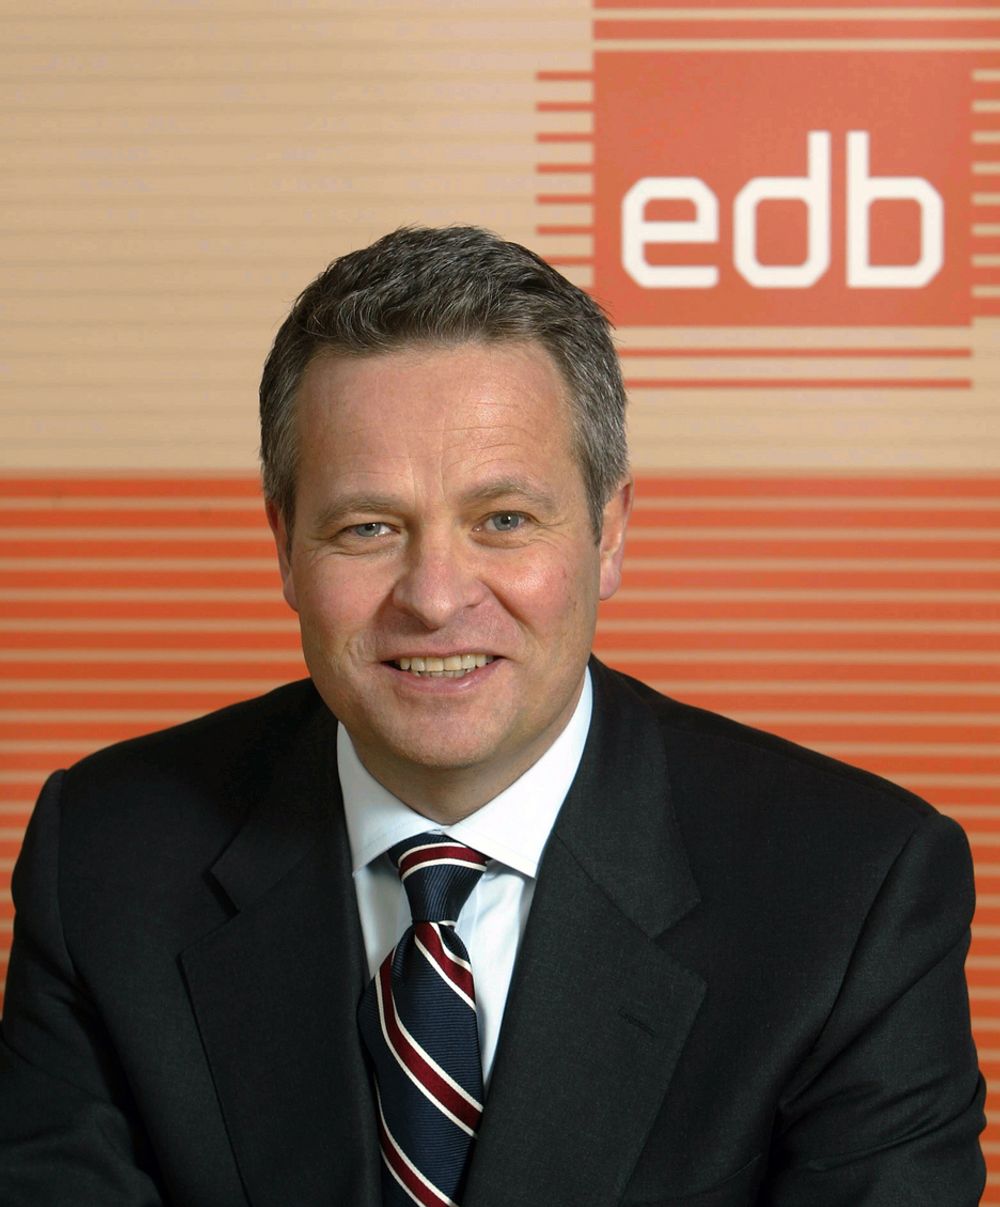 ENDRE RANGNES·Overtok som konsernsjef i EDB for tre år siden·Var tidligere administrerende direktør i IBM Norge·Internasjonale lederstillinger i IBM·Styremedlem i Relacom